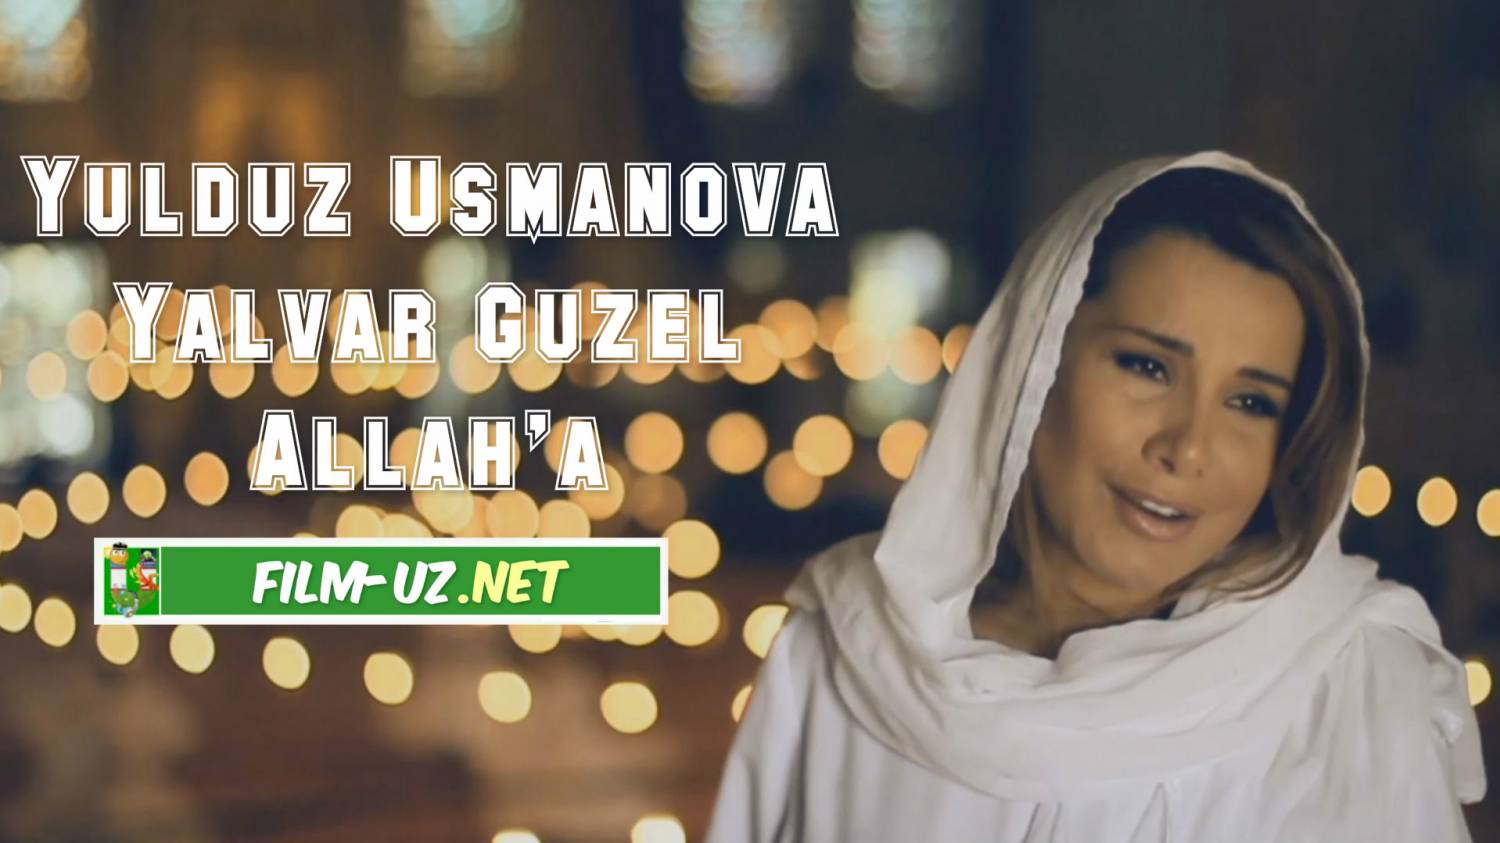 Yulduz Usmanova Yalvar Güzel Allahaa смотреть онлайн